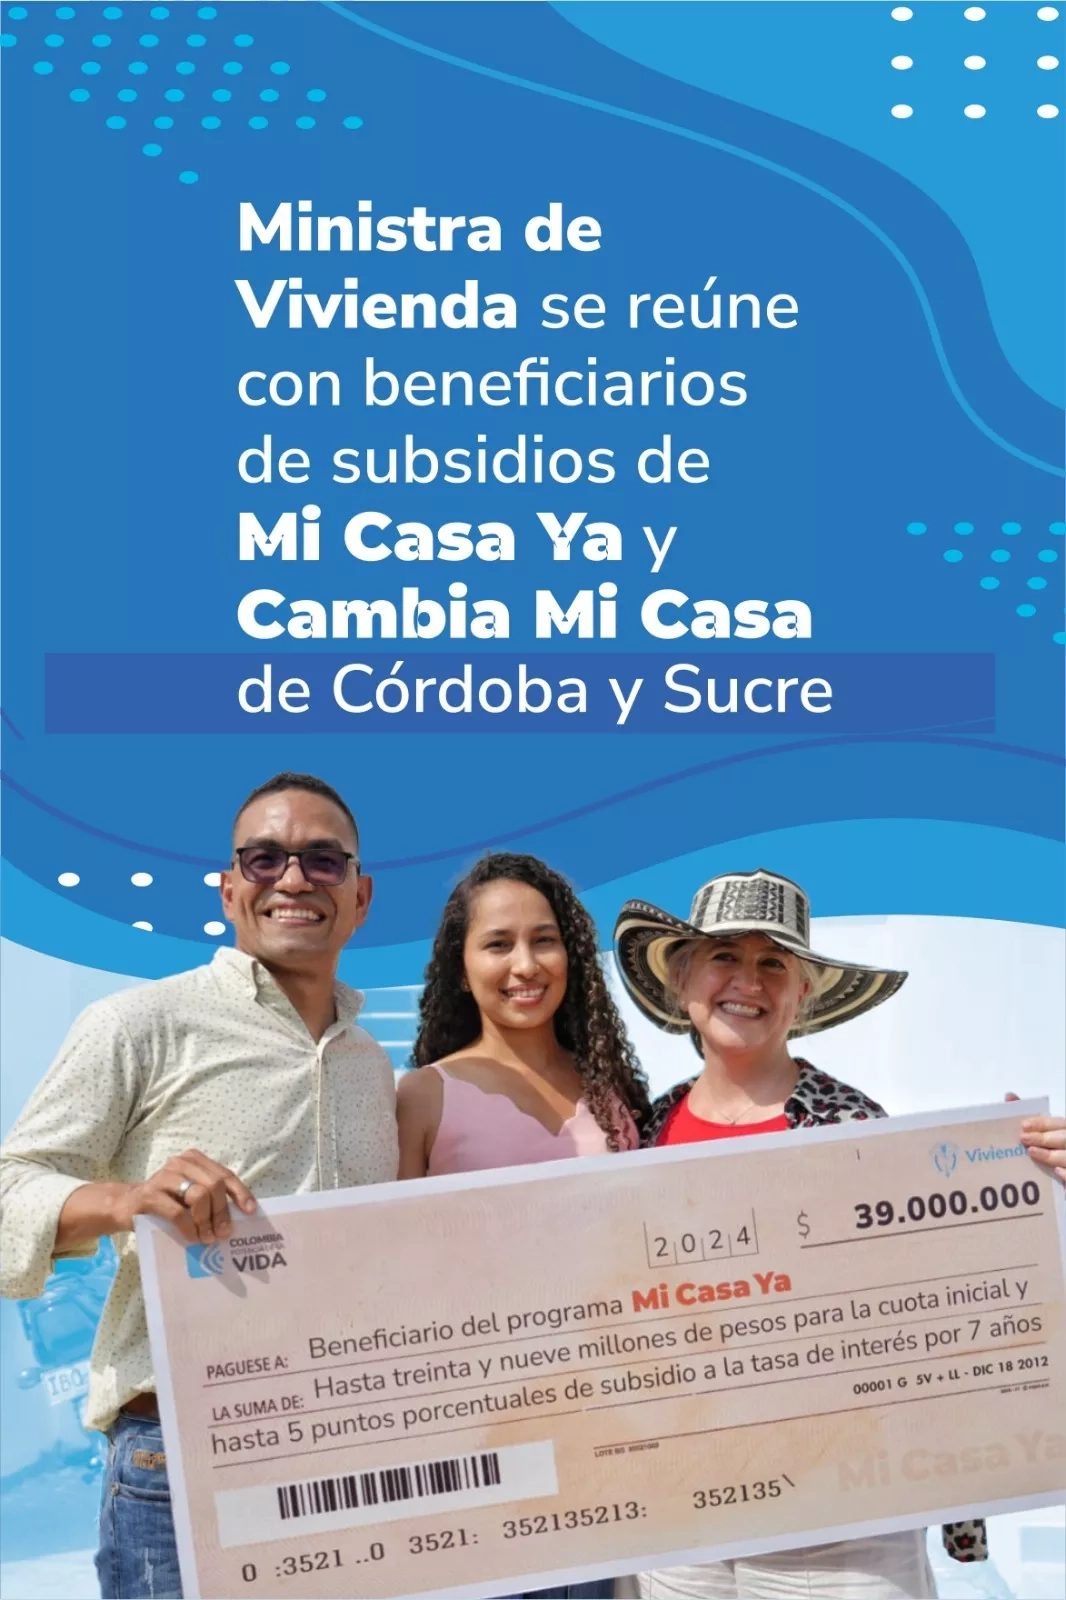 Ministra de Vivienda se reúne con beneficiarios de subsidios de Mi Casa Ya y Cambia Mi Casa de Córdoba y Sucre